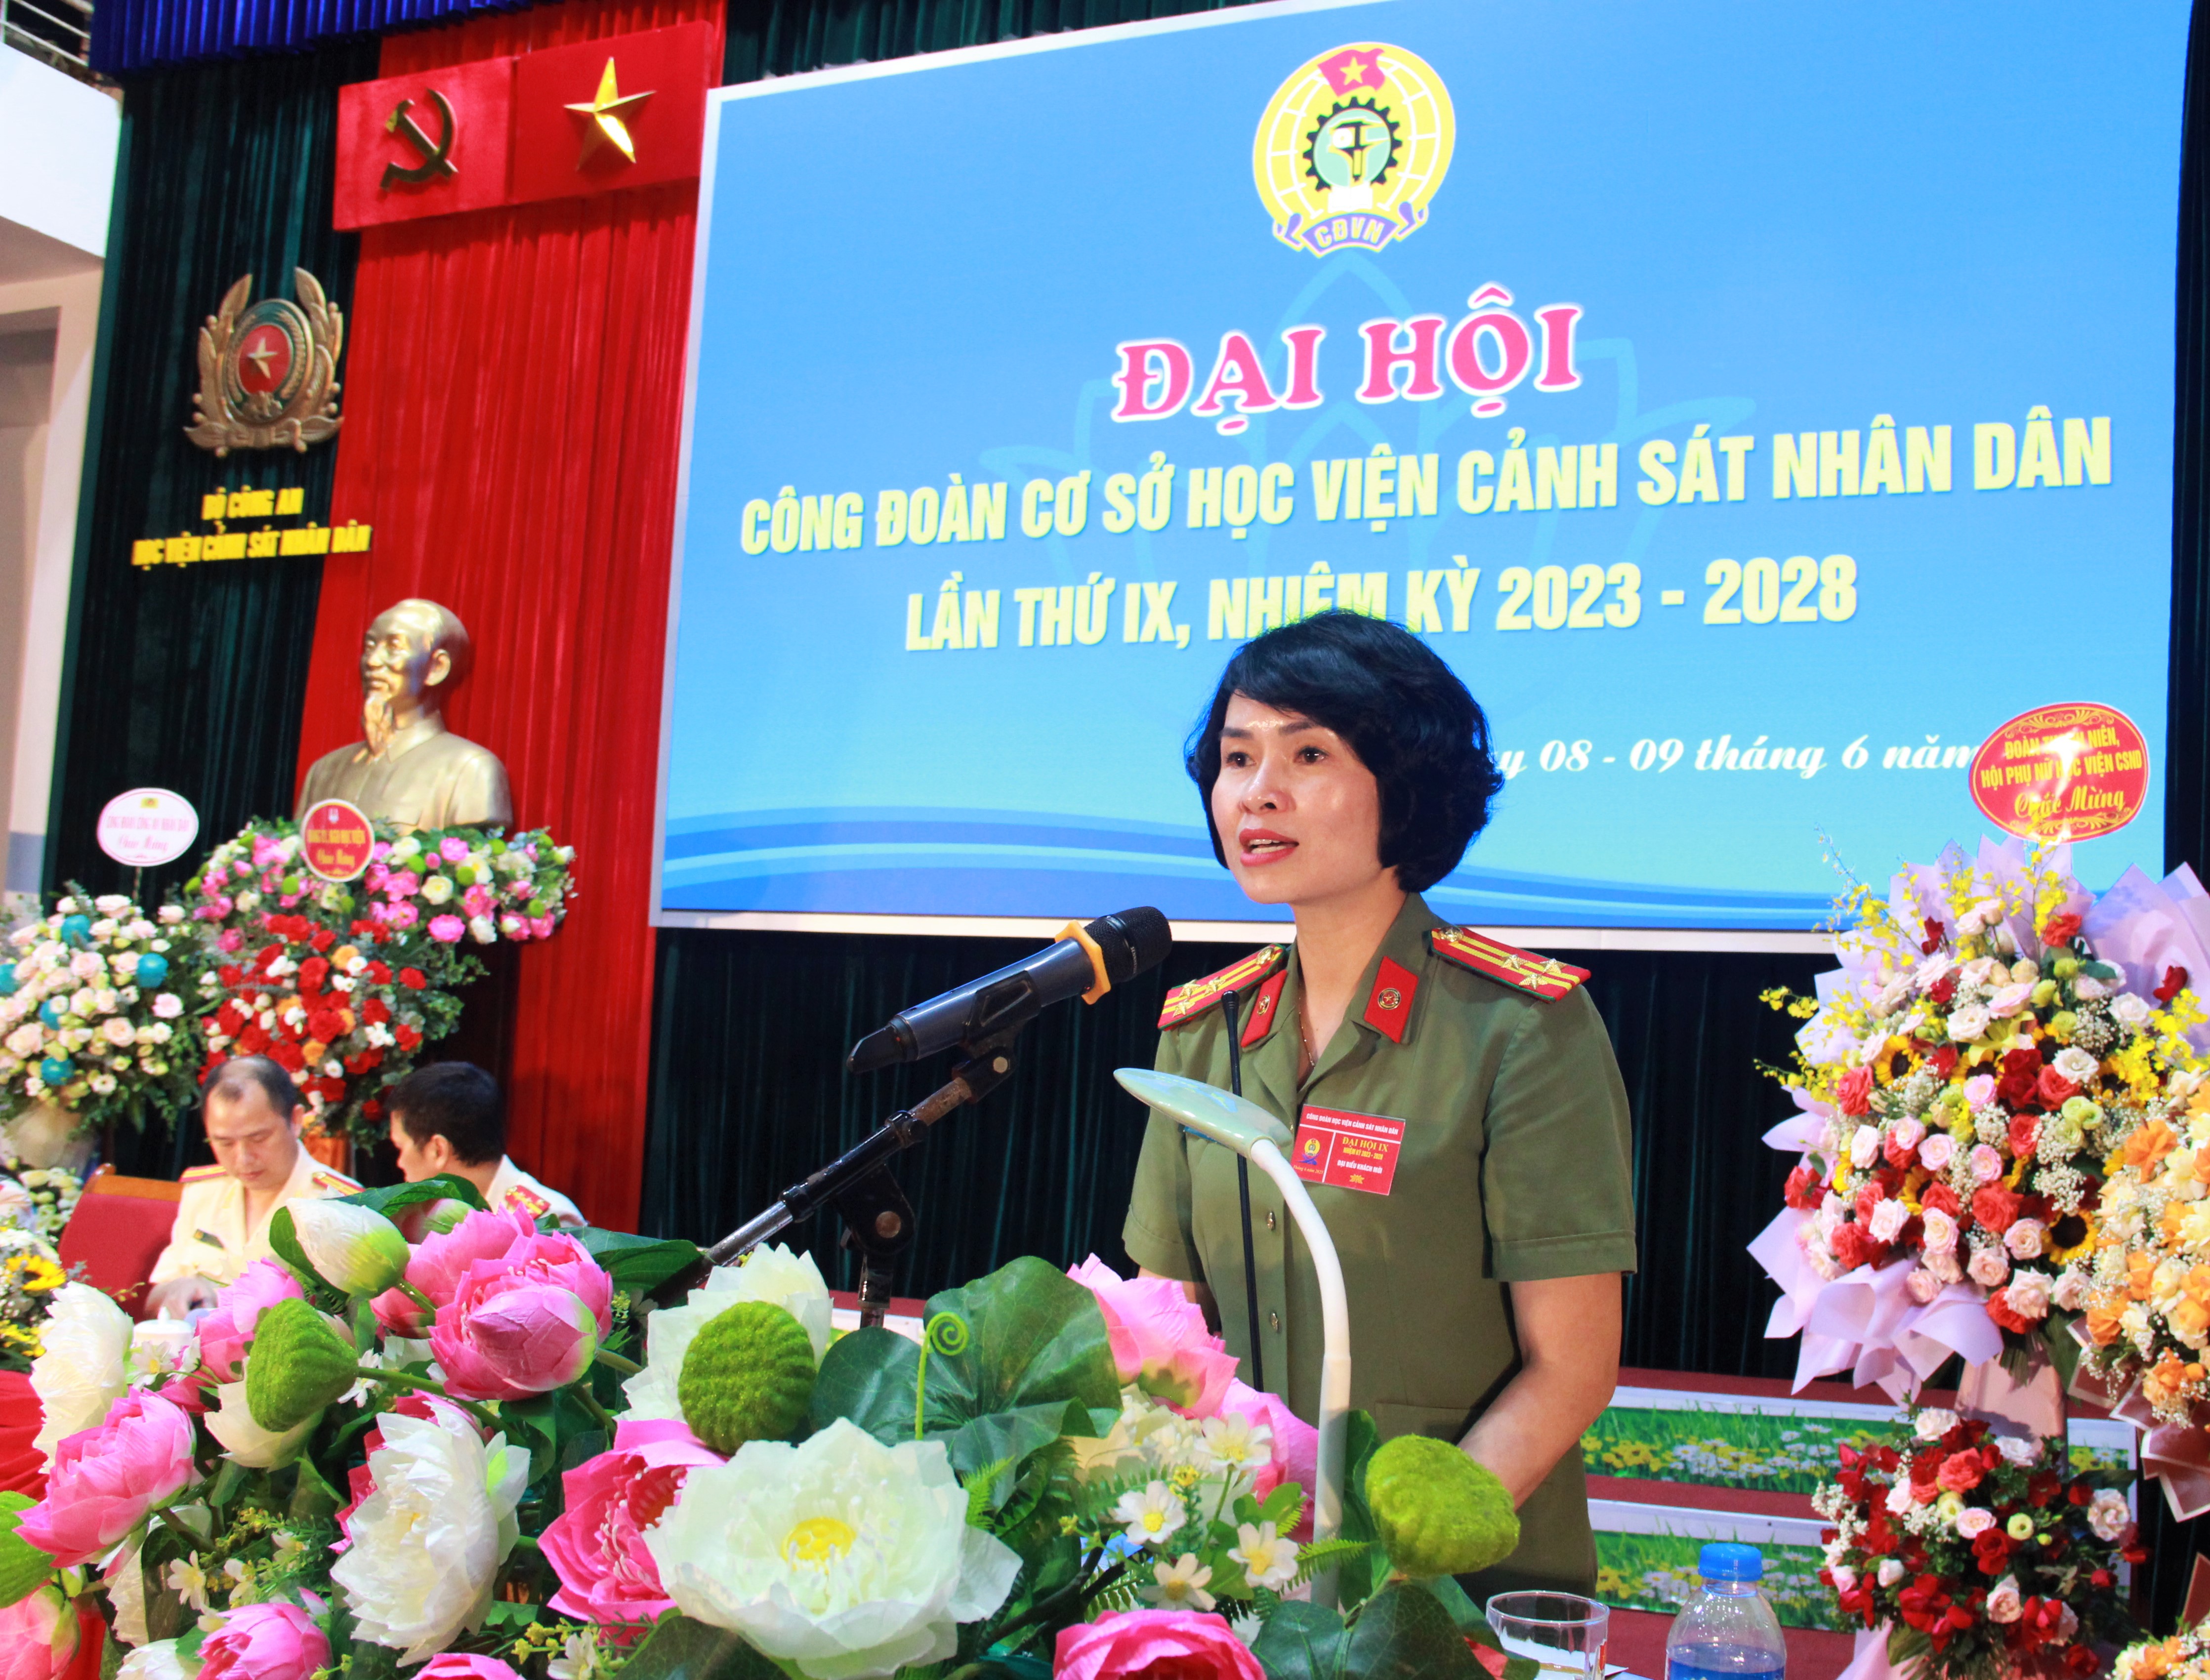 Thượng tá Công Thanh Thảo, Trưởng ban Công đoàn CAND phát biểu tại Đại hội